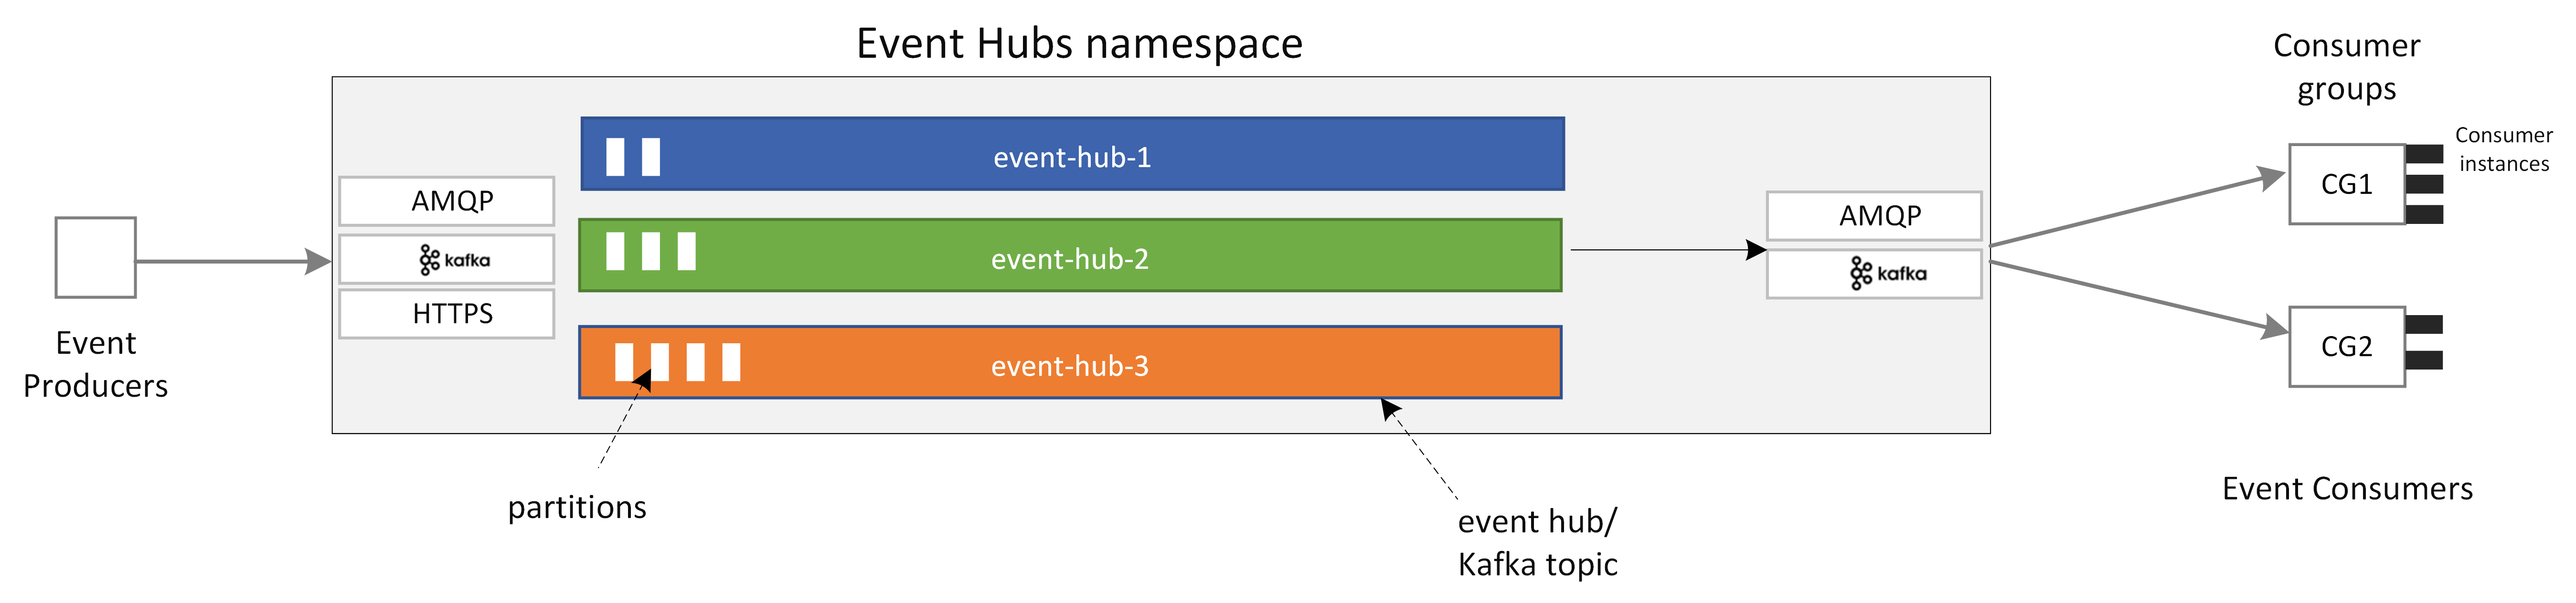 Az Event Hubs fő összetevőit bemutató diagram.